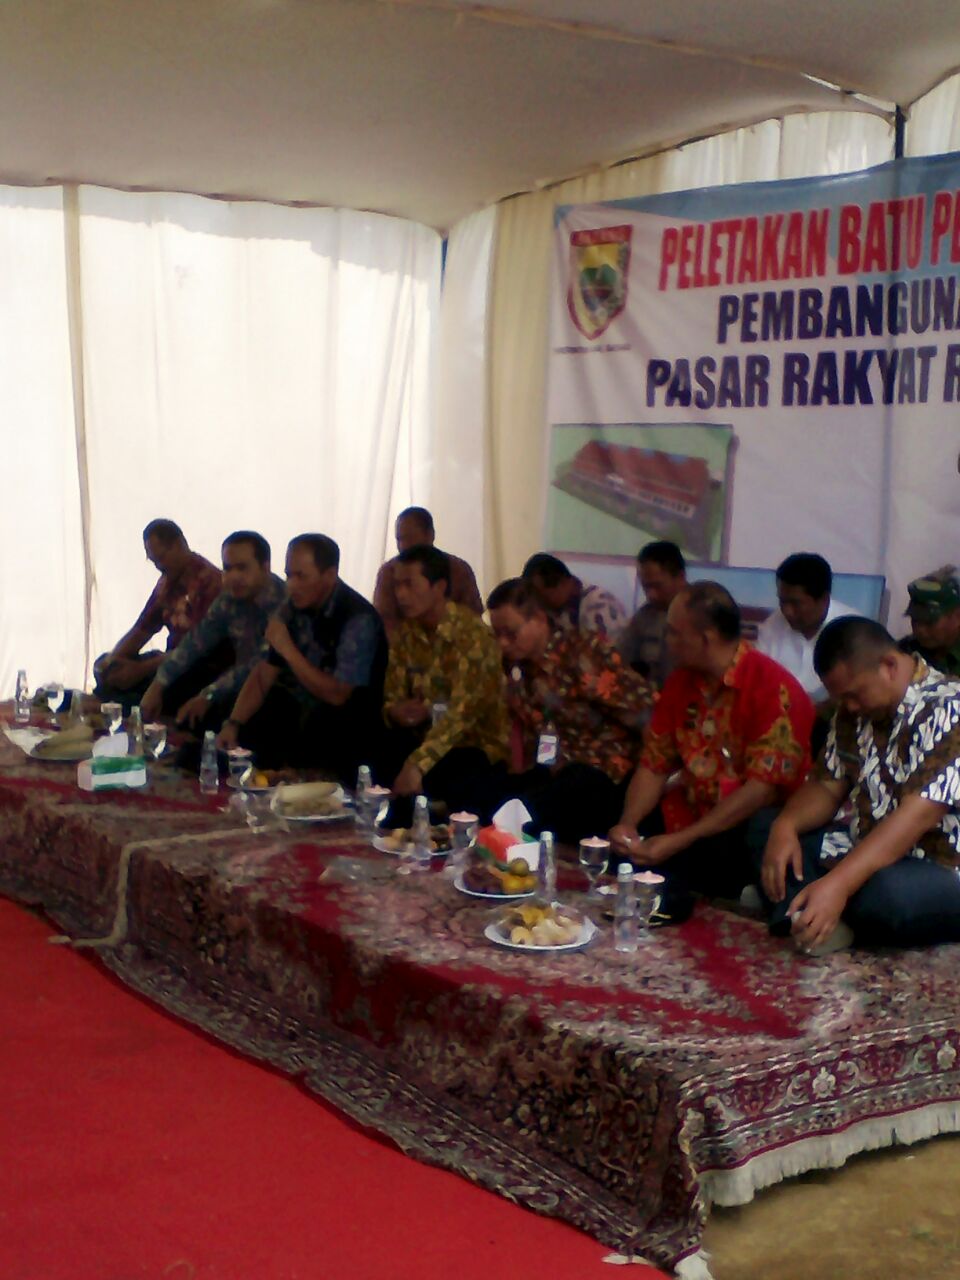 LensaHukum.co.id - Pasar Rakyat Desa Reban di Bangun 1 - Pasar Rakyat Desa Reban di Bangun